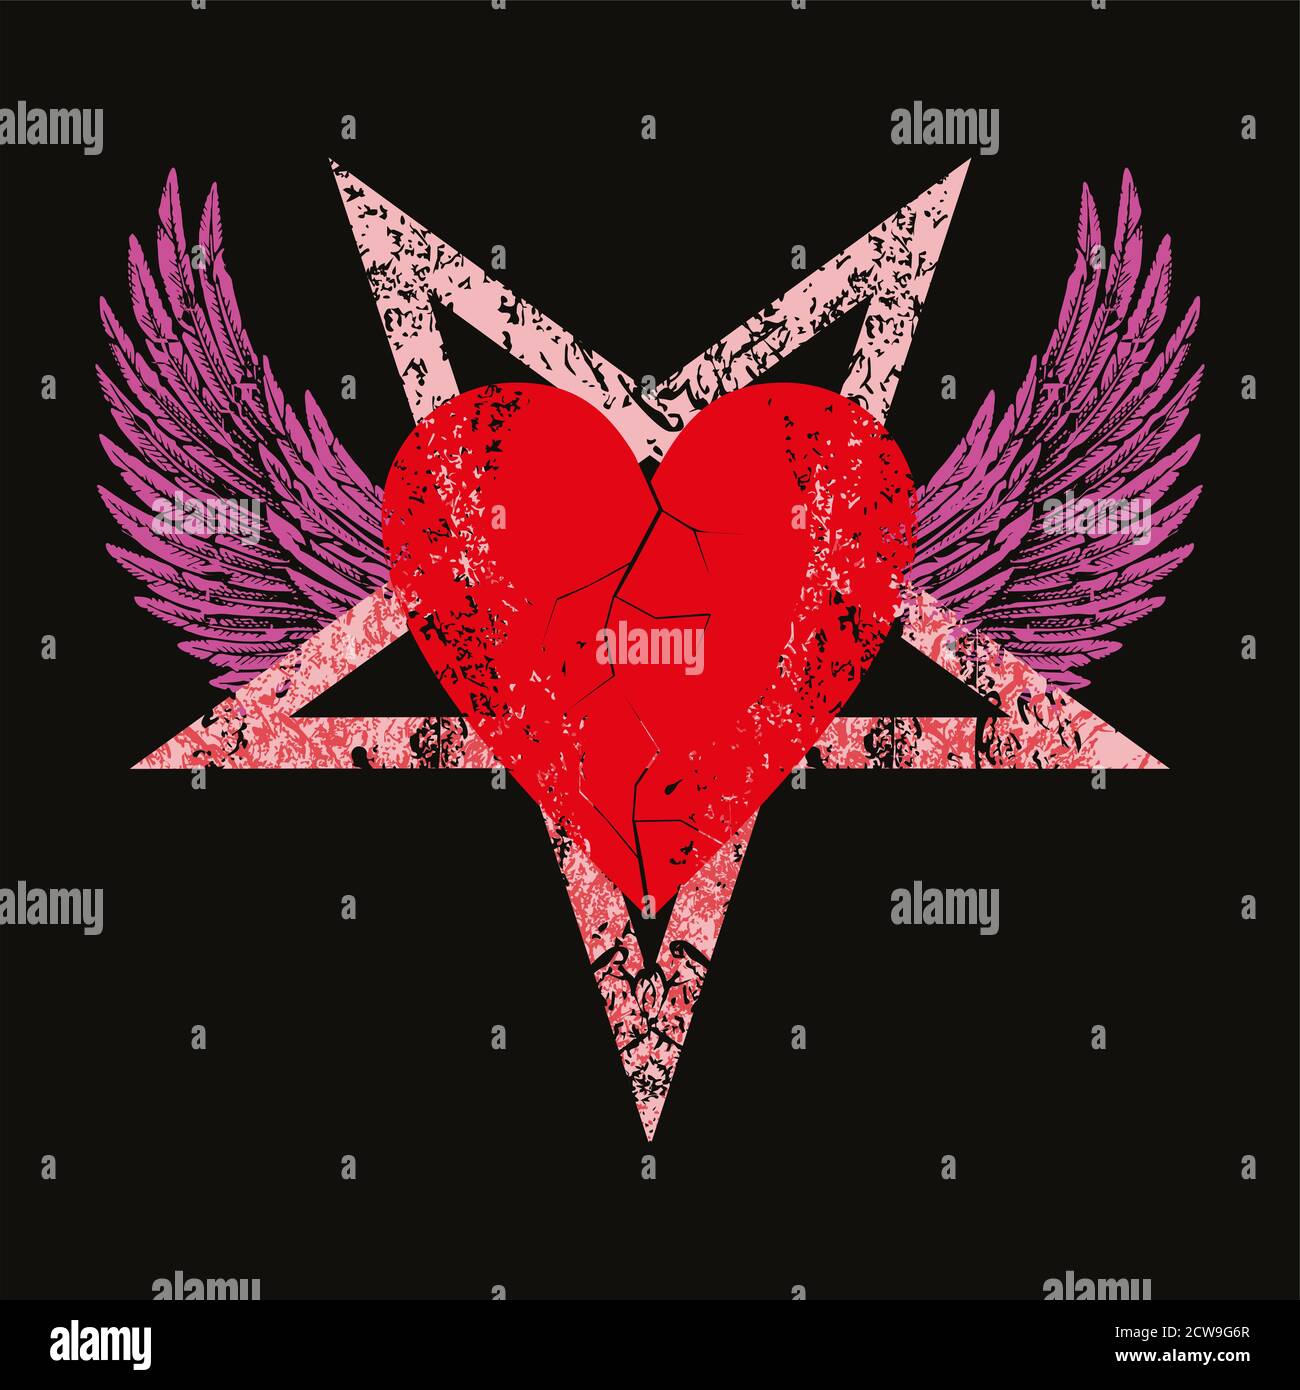 Vektordarstellung eines roten Herzens auf einem geflügelten Pentagramm auf schwarzem Hintergrund. Liebe Symbol für Valentinstag T-Shirts oder Plakate. Stock Vektor